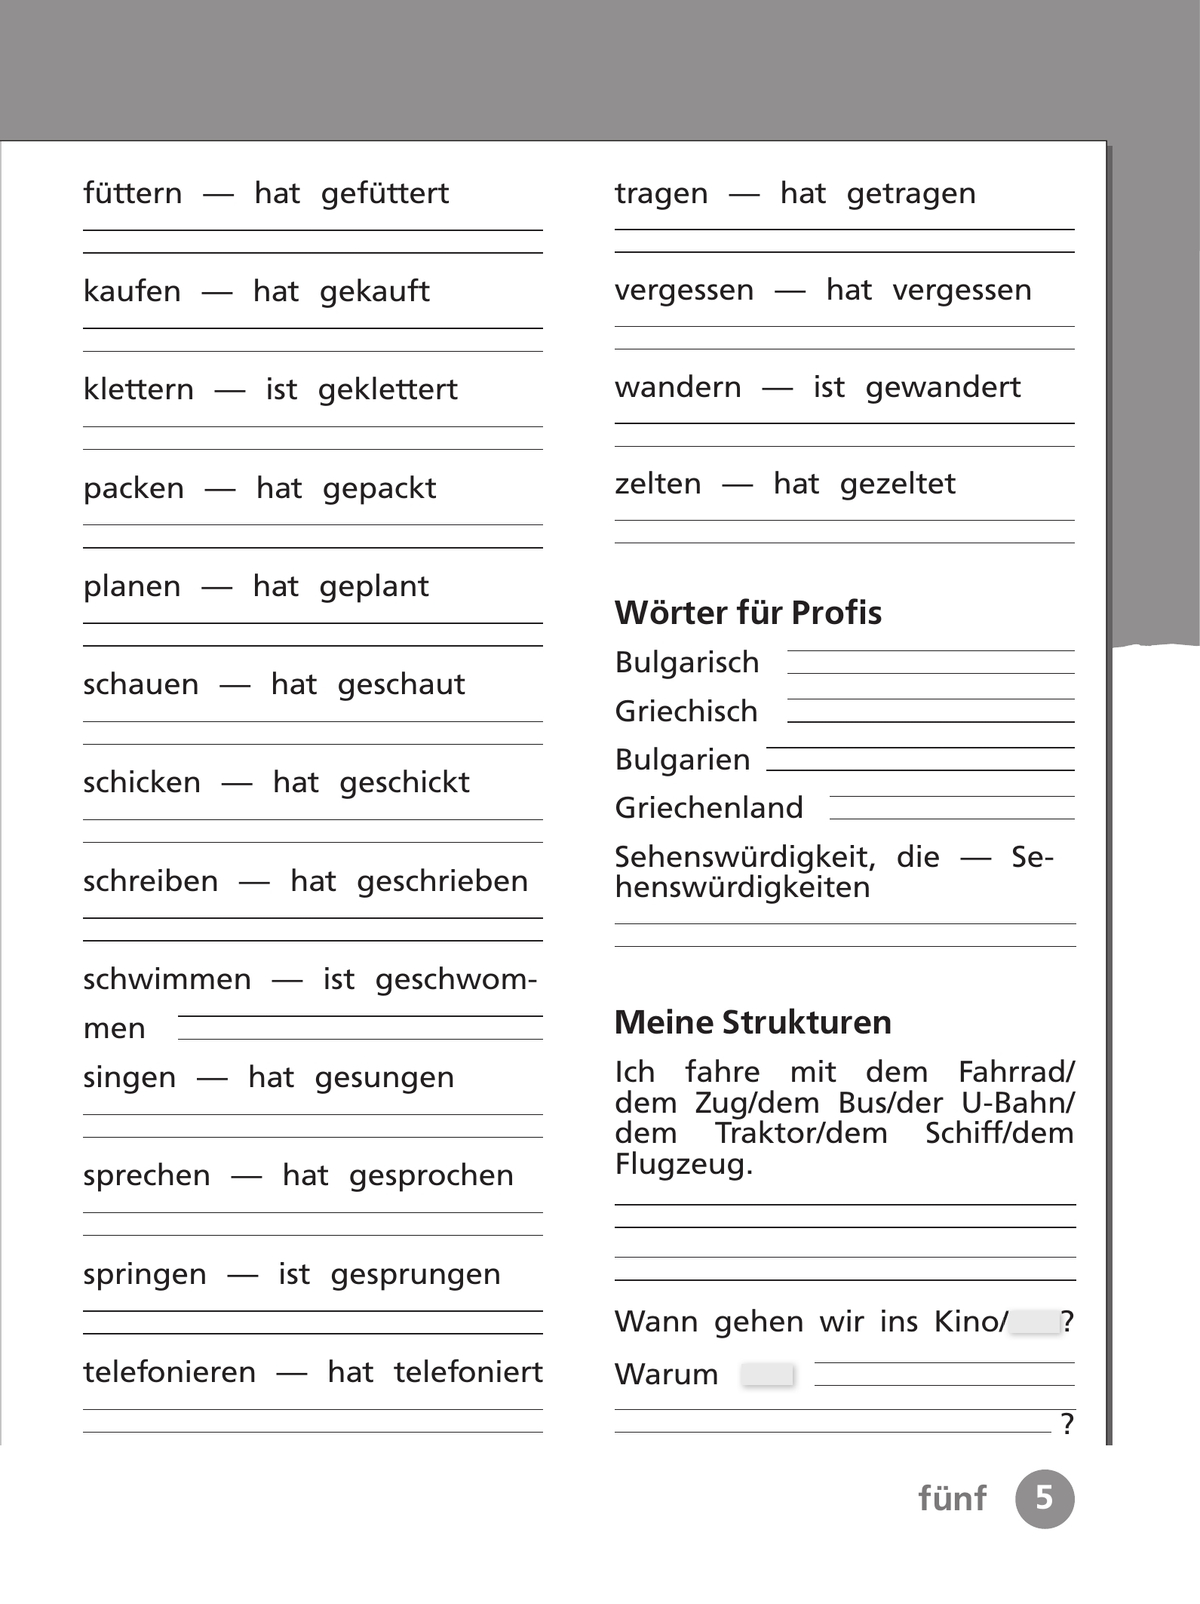 Немецкий язык. Рабочая тетрадь. 4 класс. В 2 ч. Часть 1 3